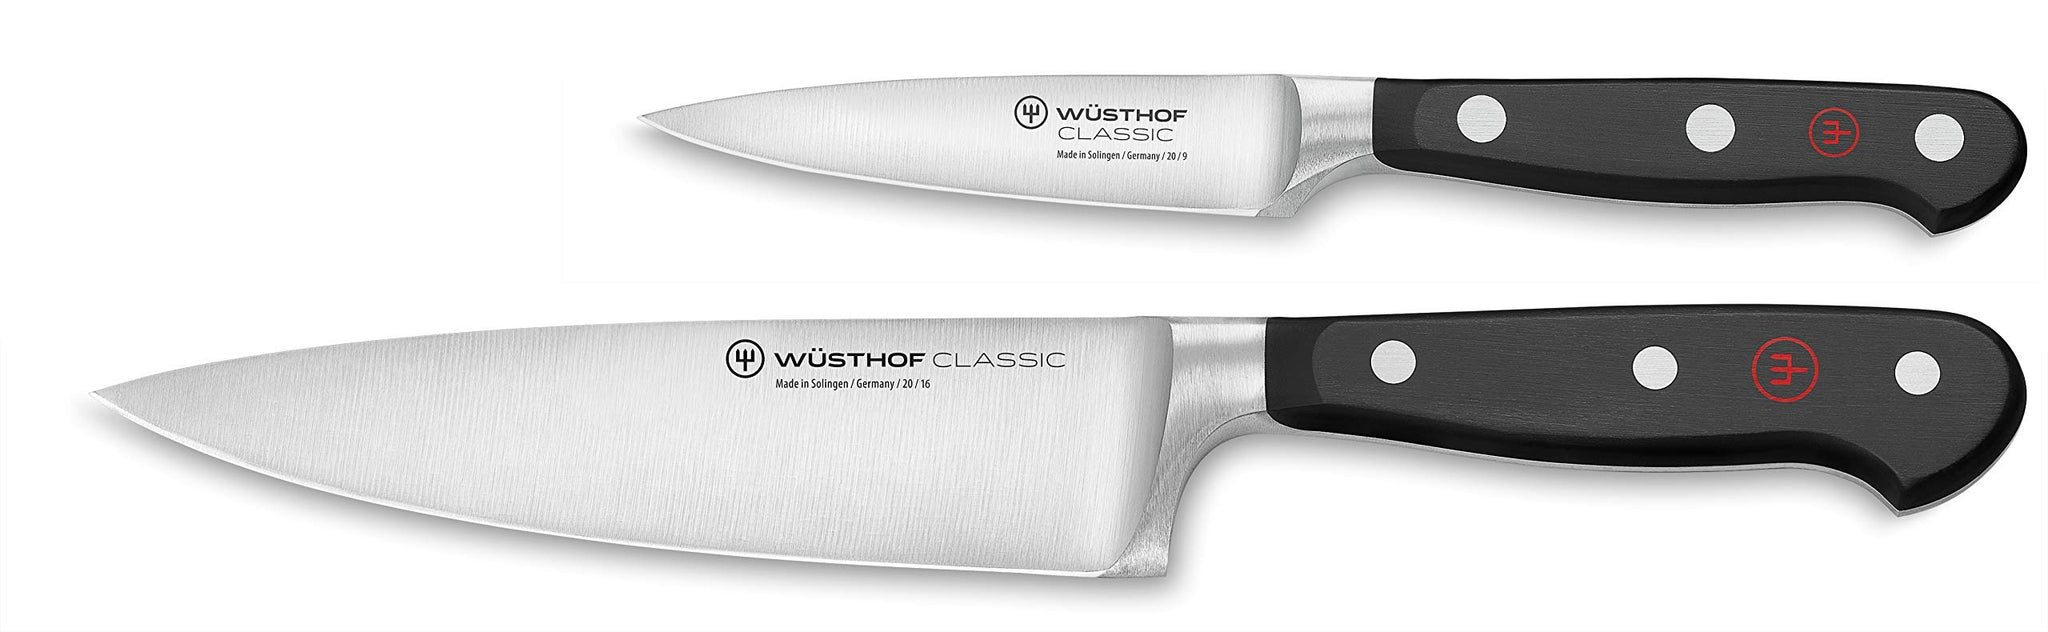 Knife Sets: Wusthof, Shun and Global